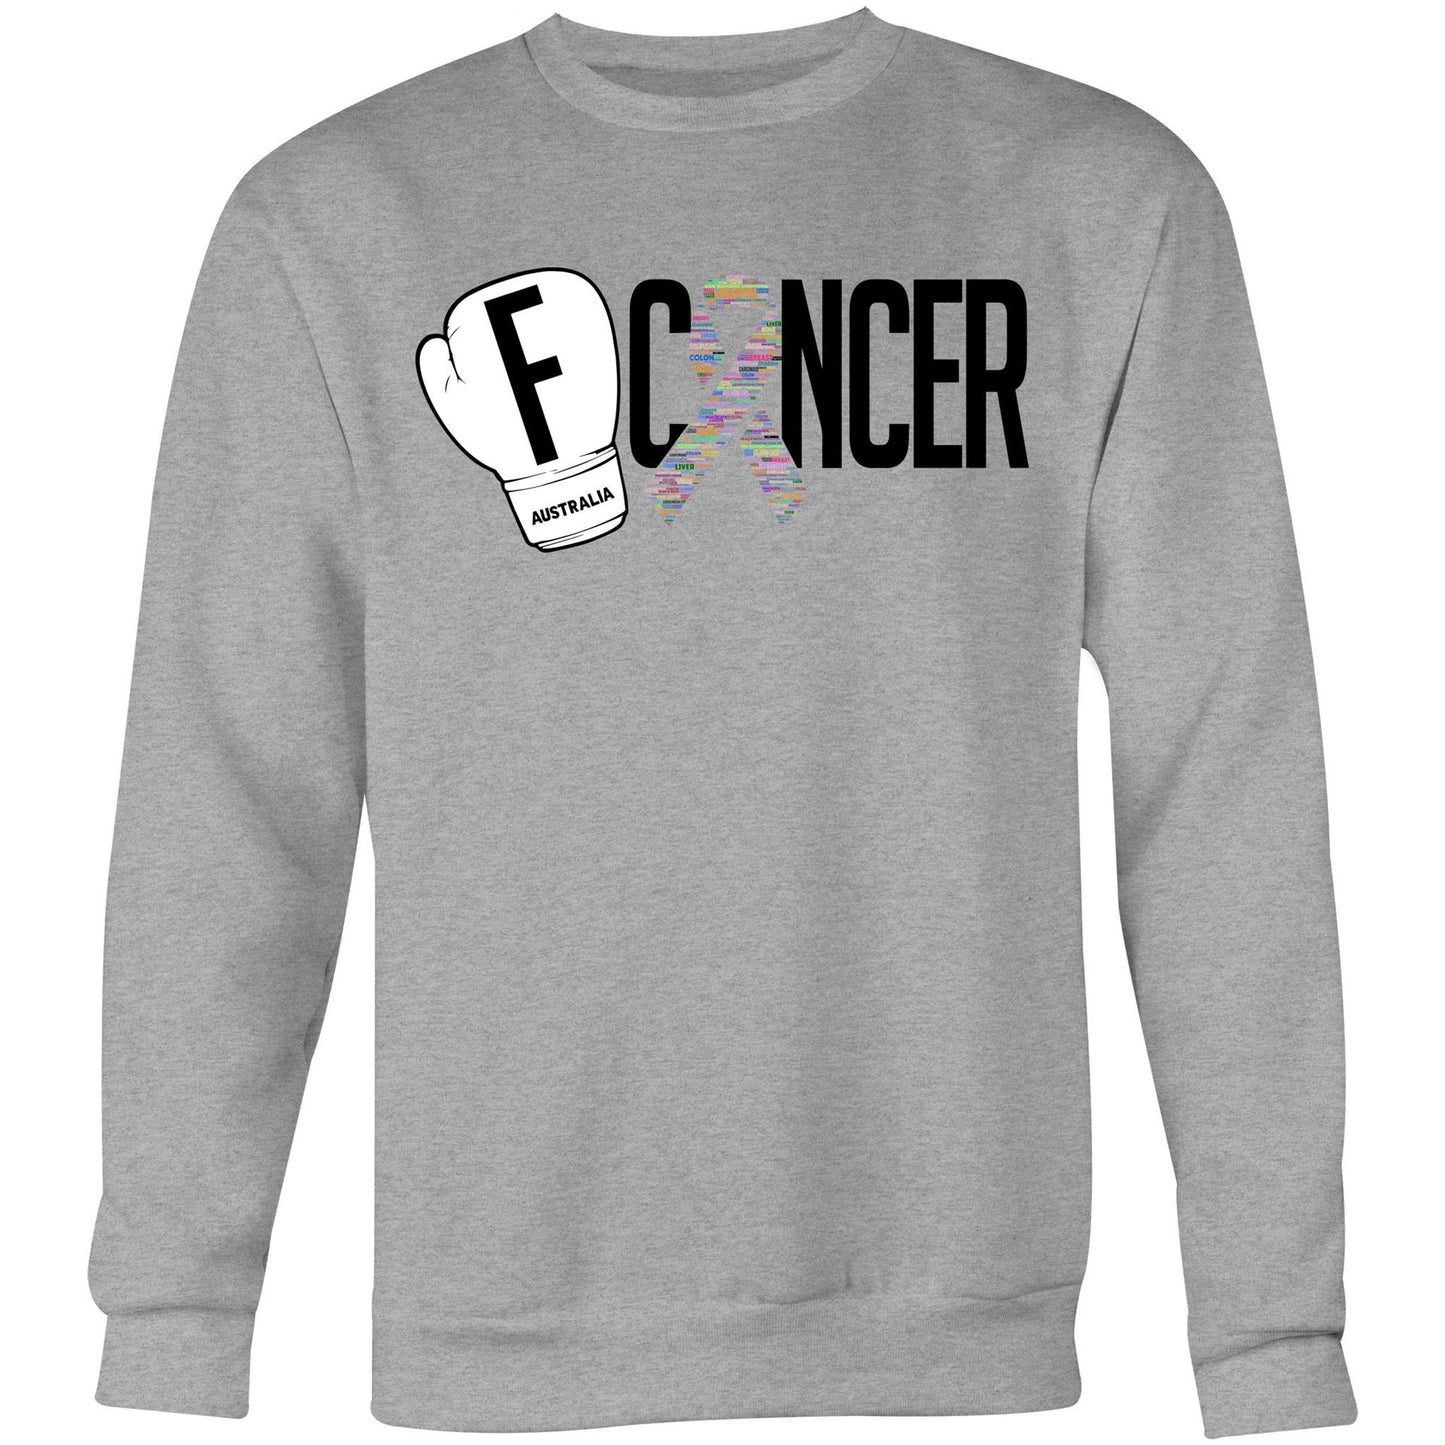 FCancerAus Crew Sweatshirt